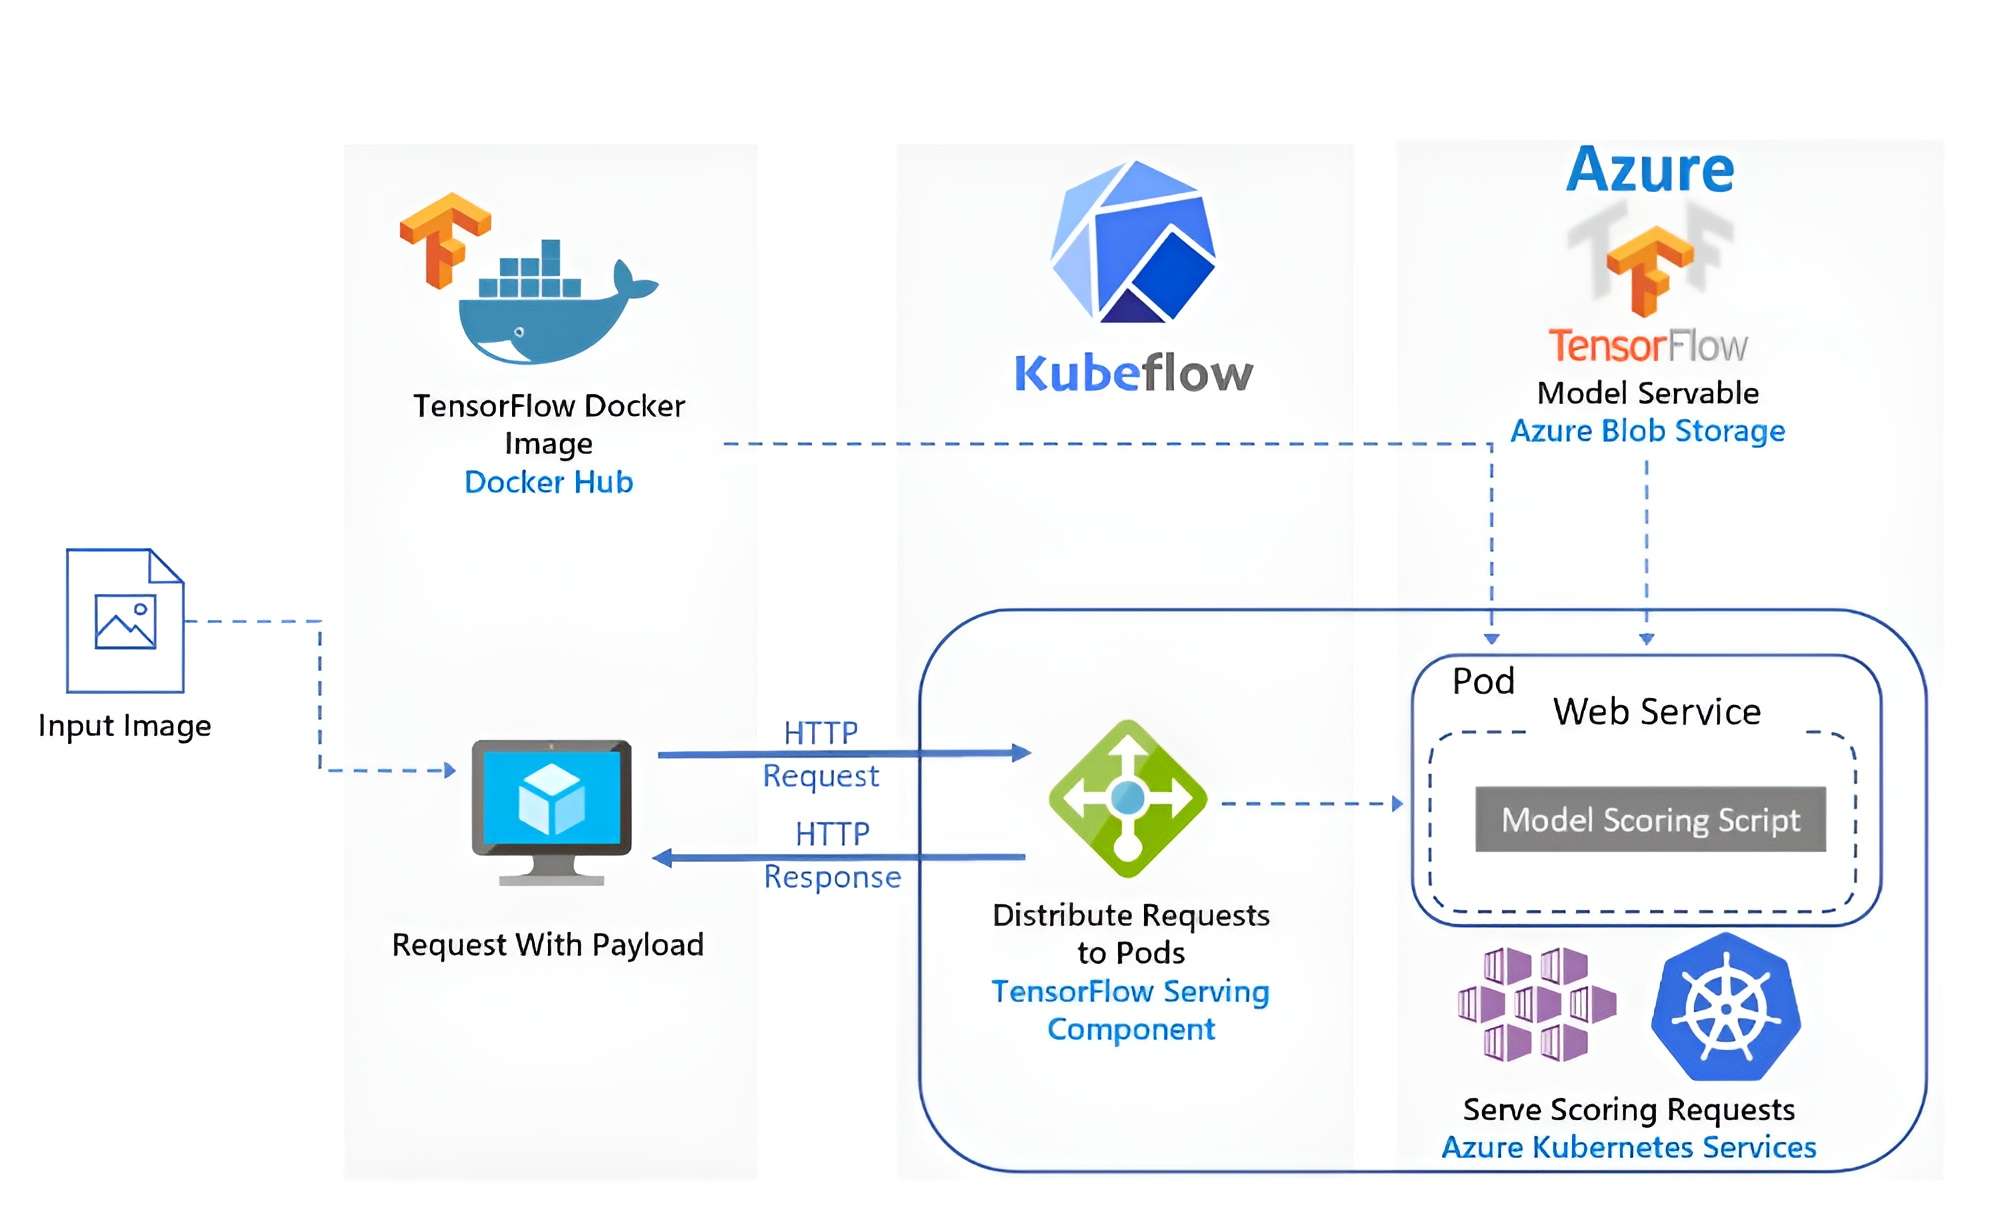 Using Kubeflow for Azure Kubernetes